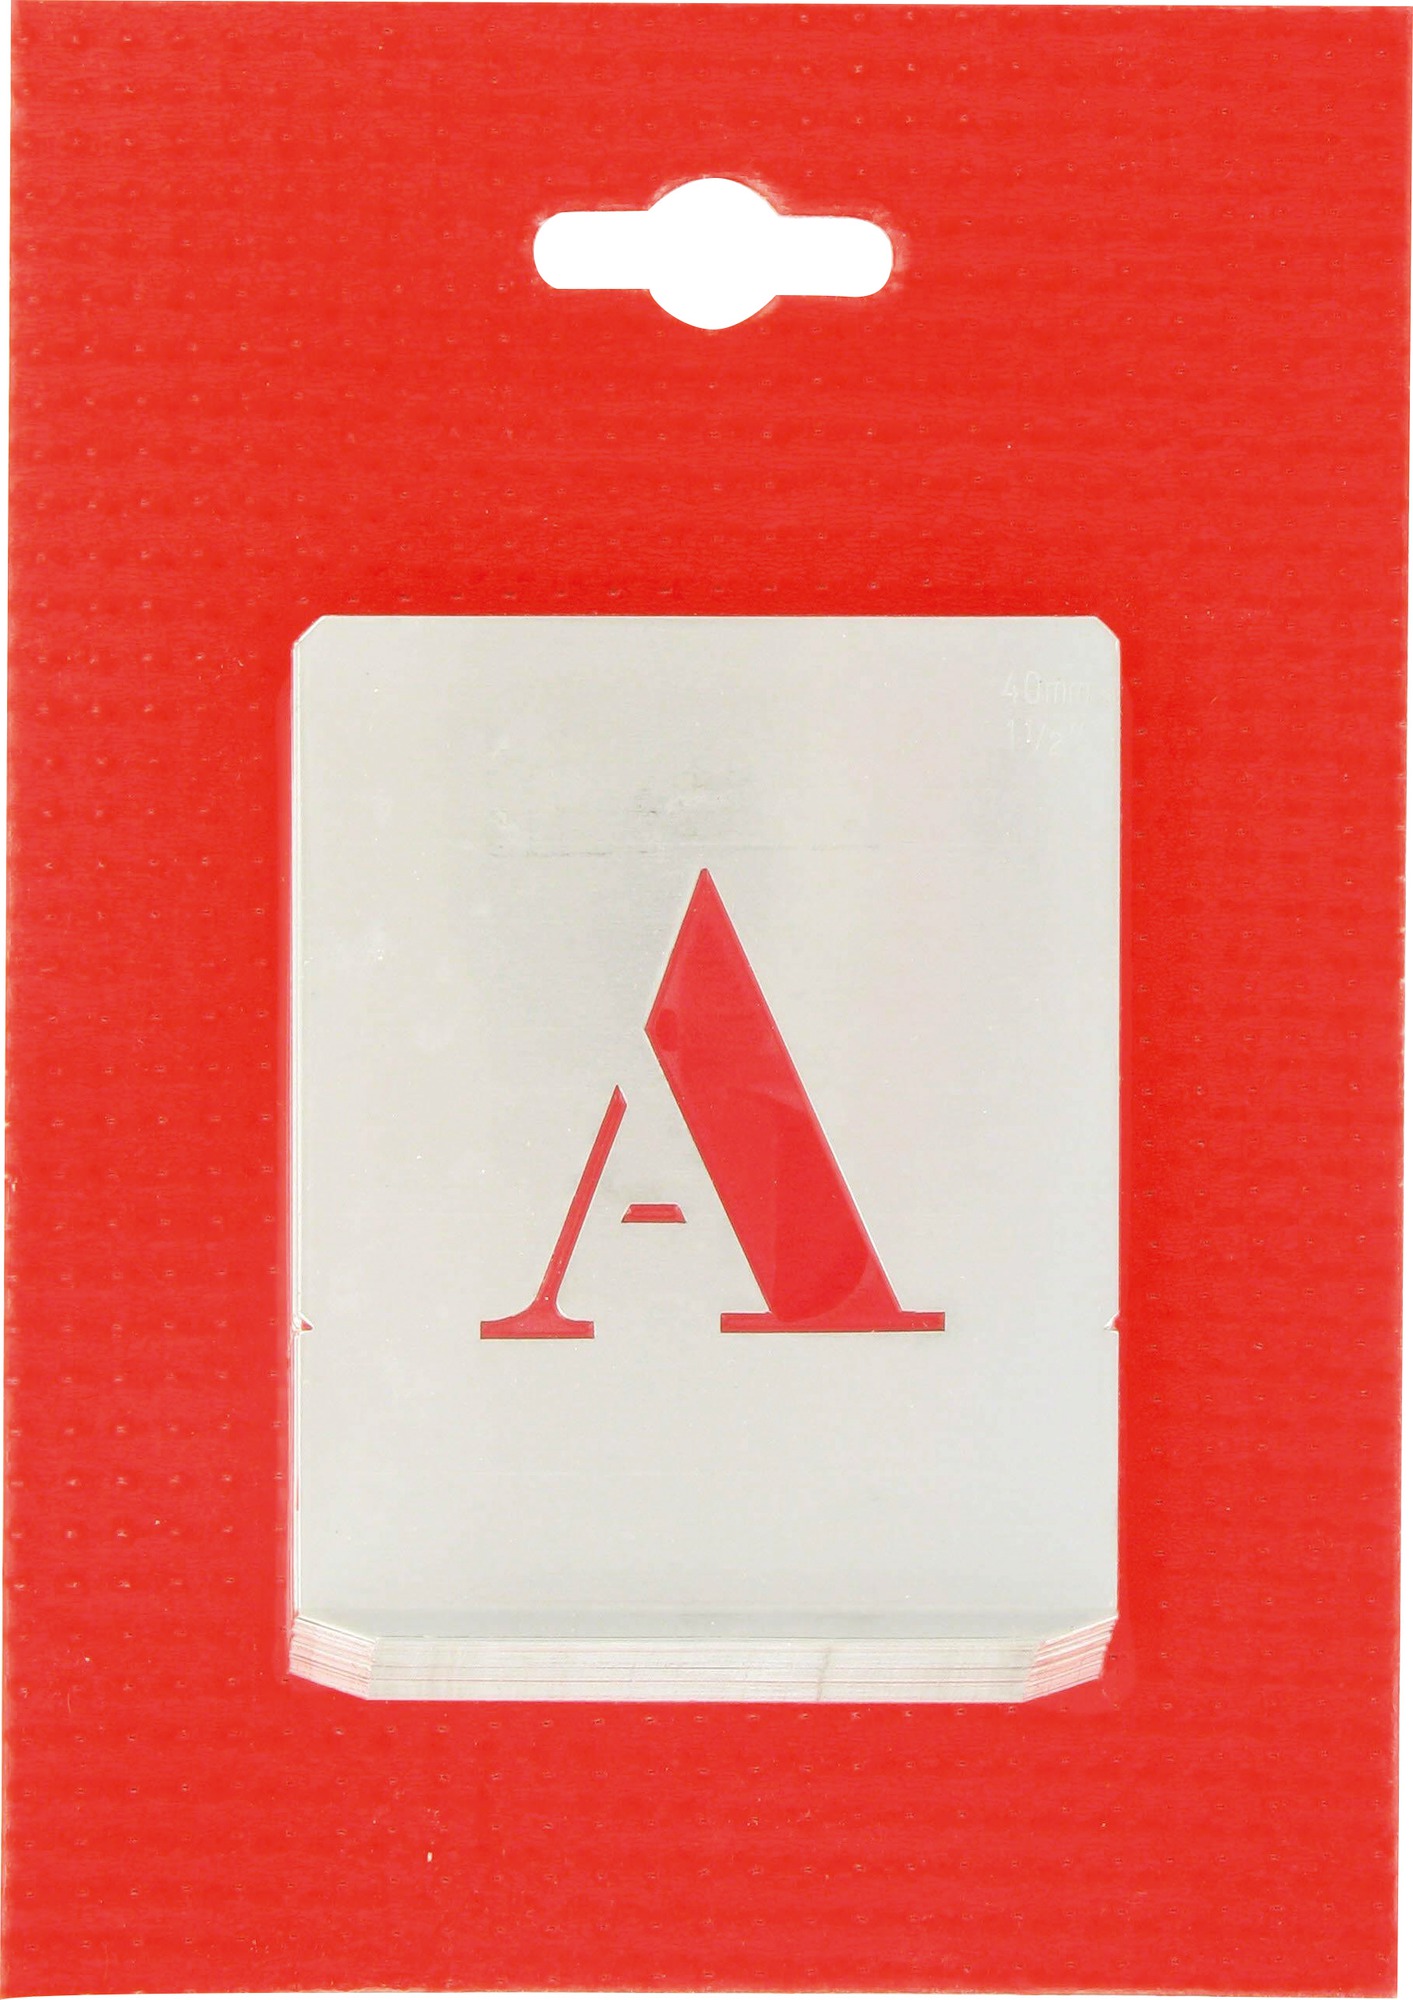 Jeu de lettres pochoirs alphabet aluminium ajouré Uny - Dimensions 40 mm